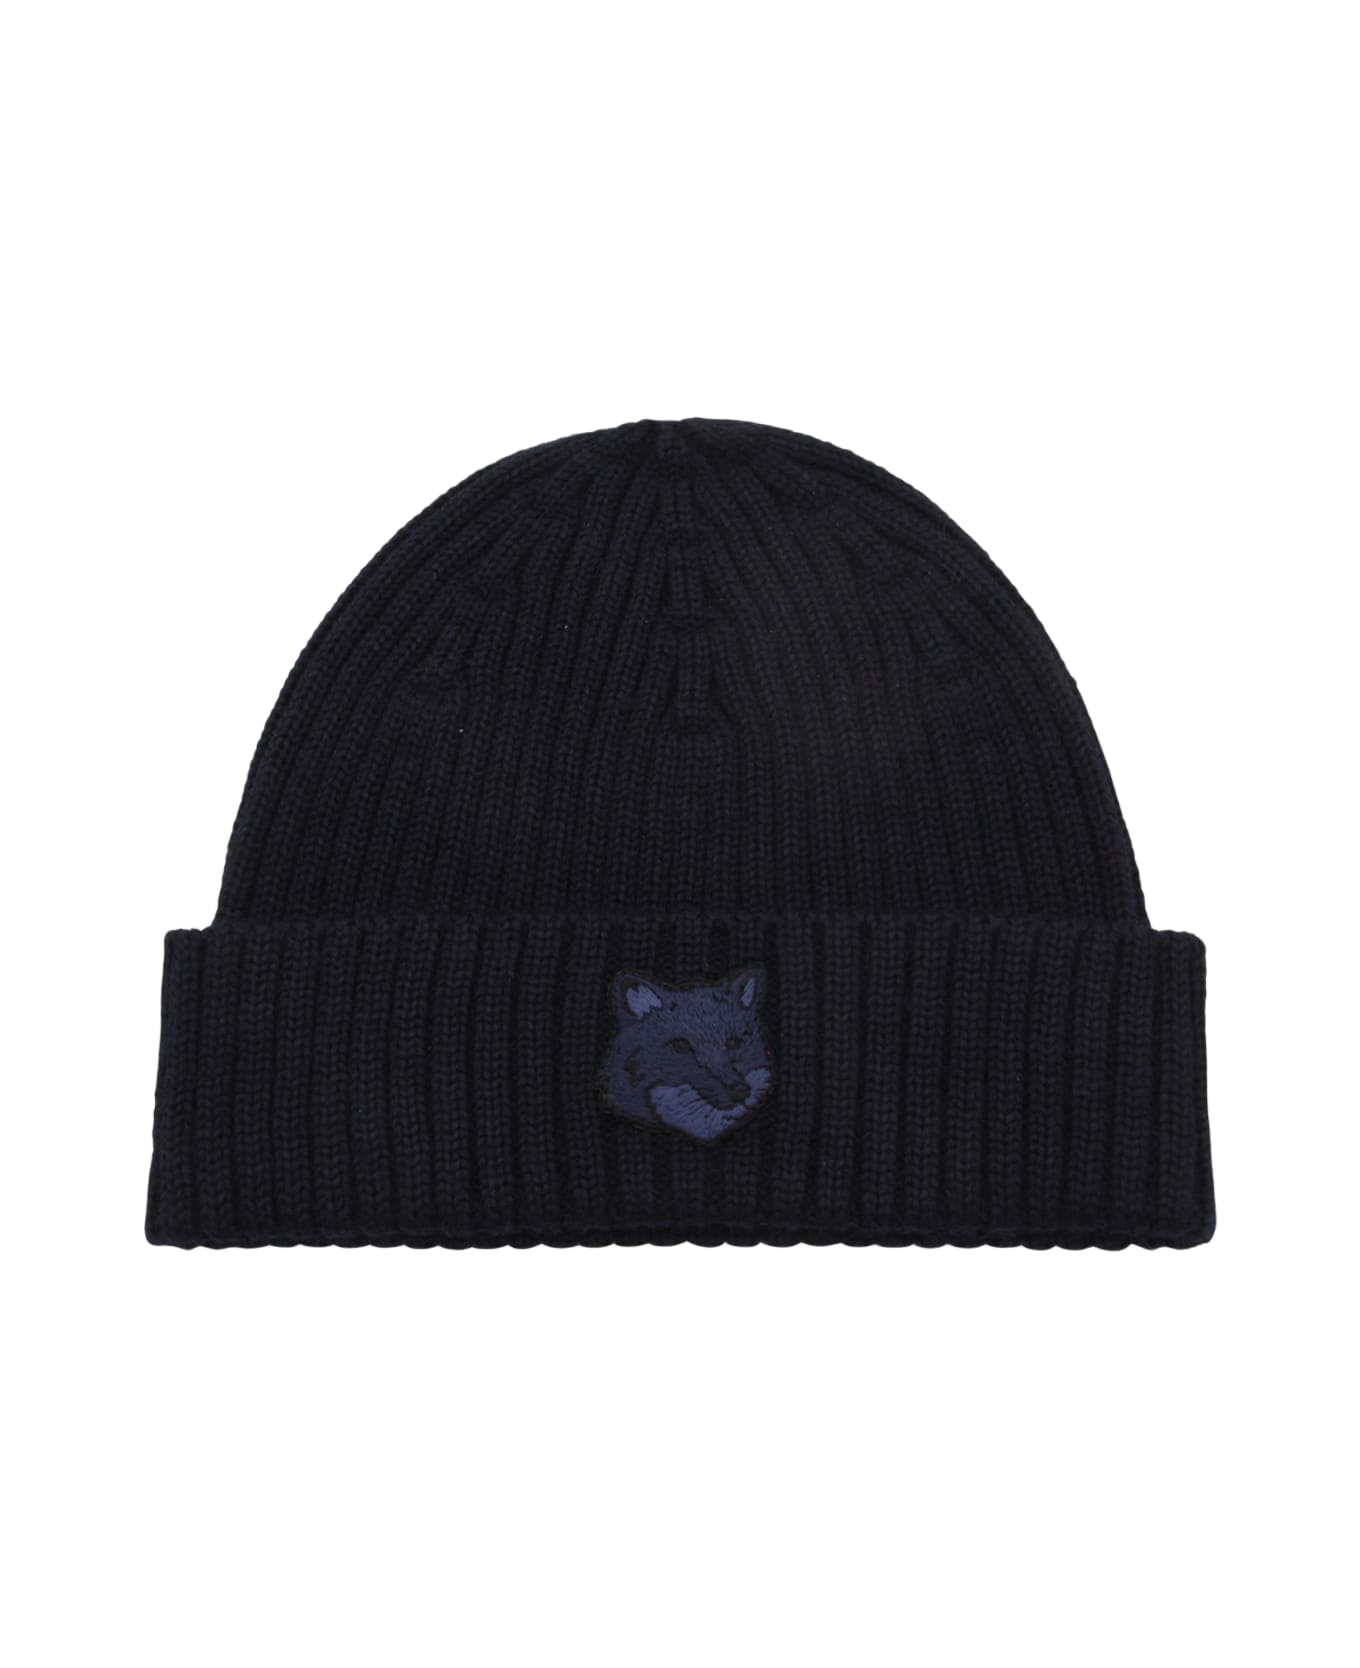 Maison Kitsuné Navy Blue Wool Fox Head Beanie - Blue 帽子